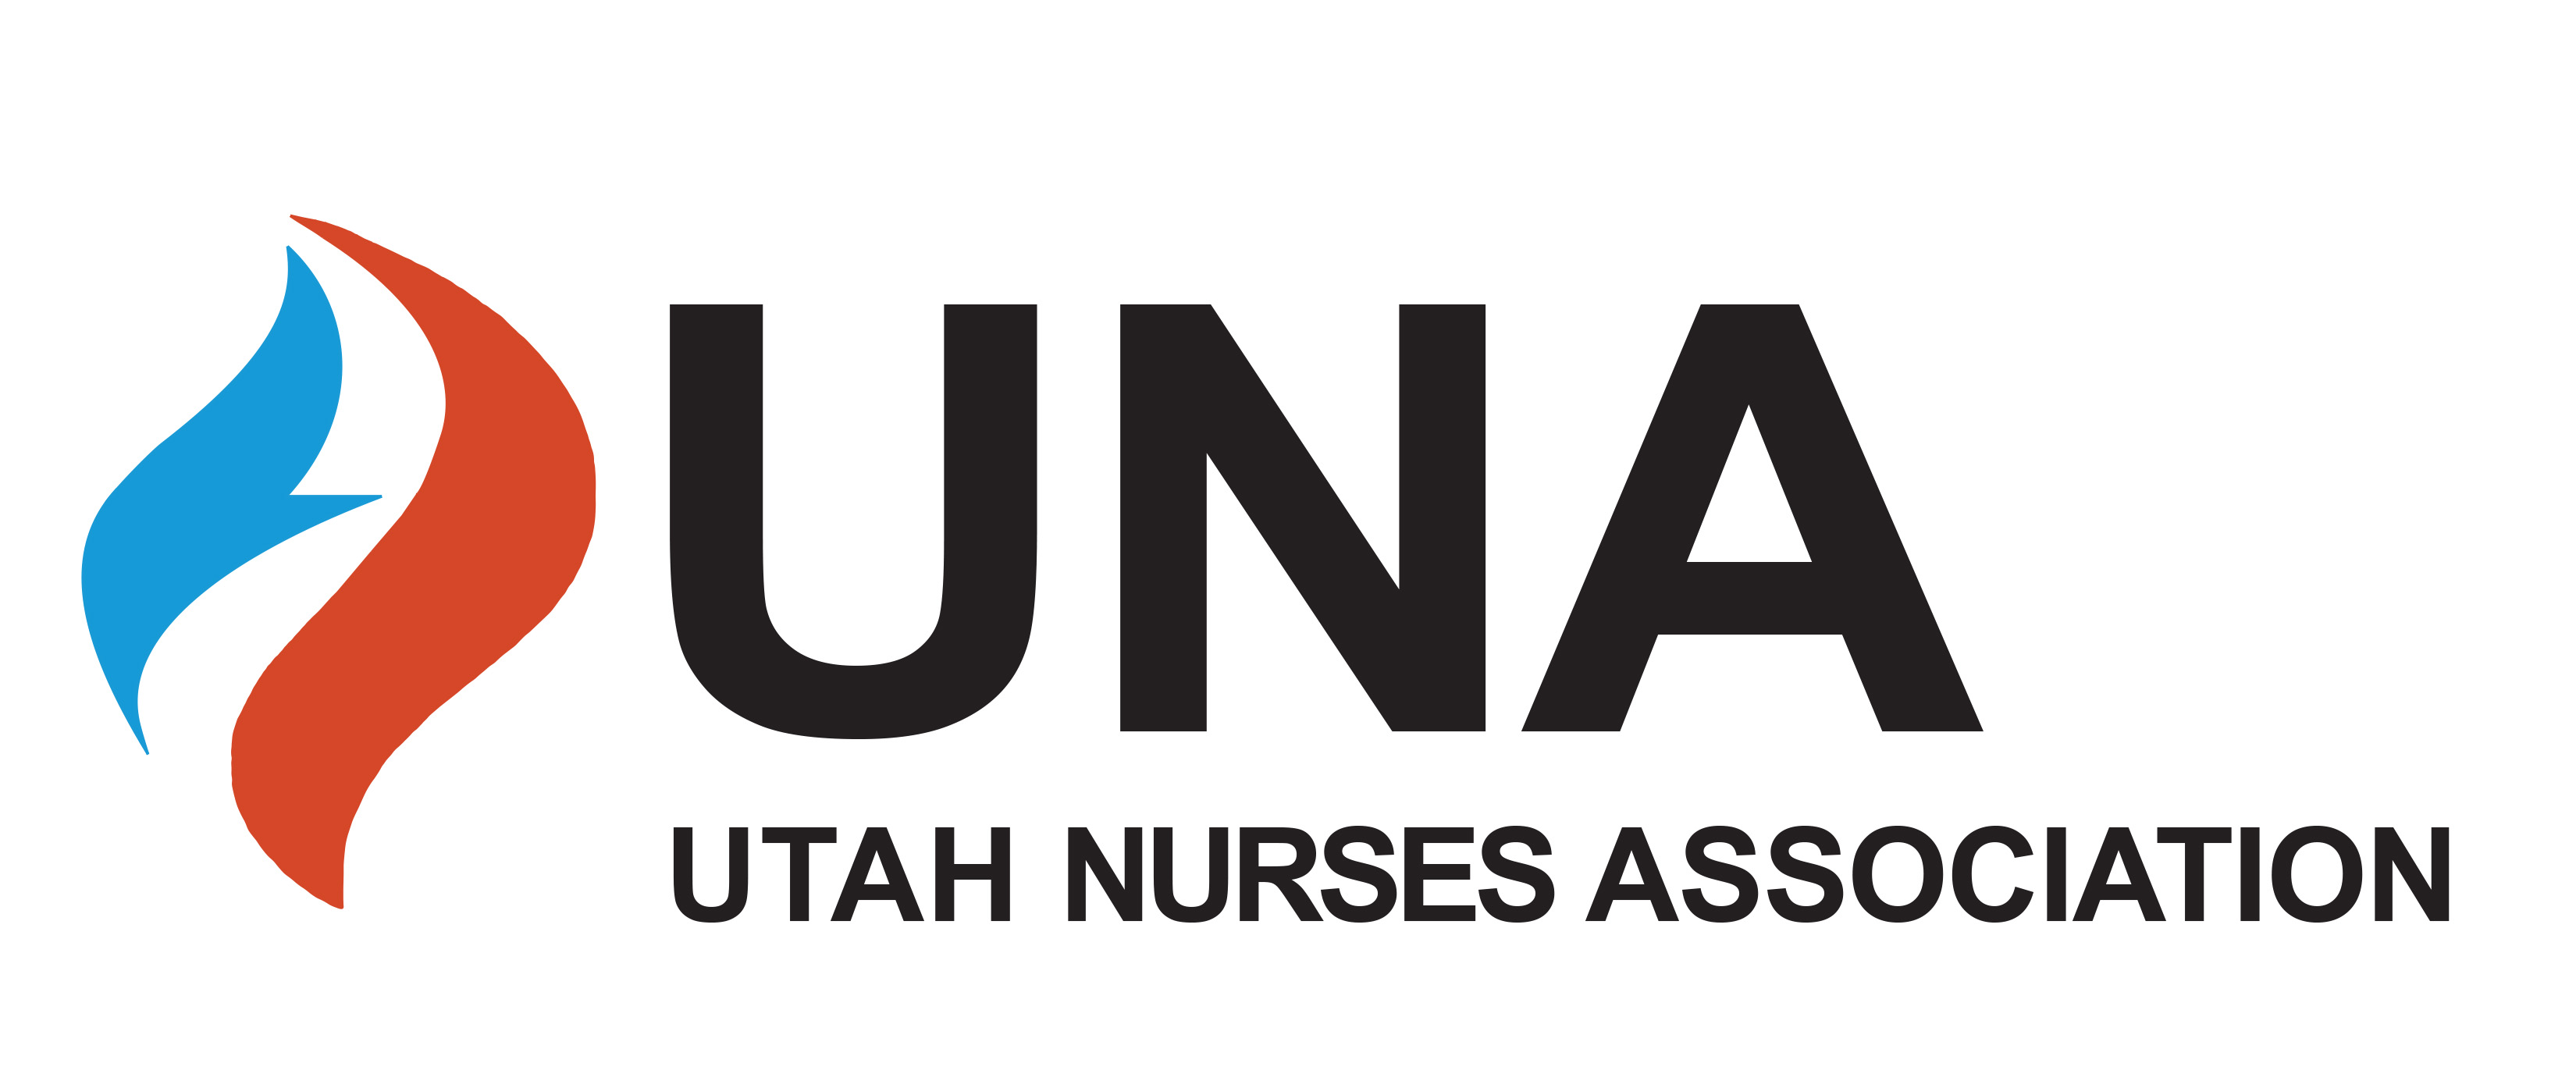 utah nurses association